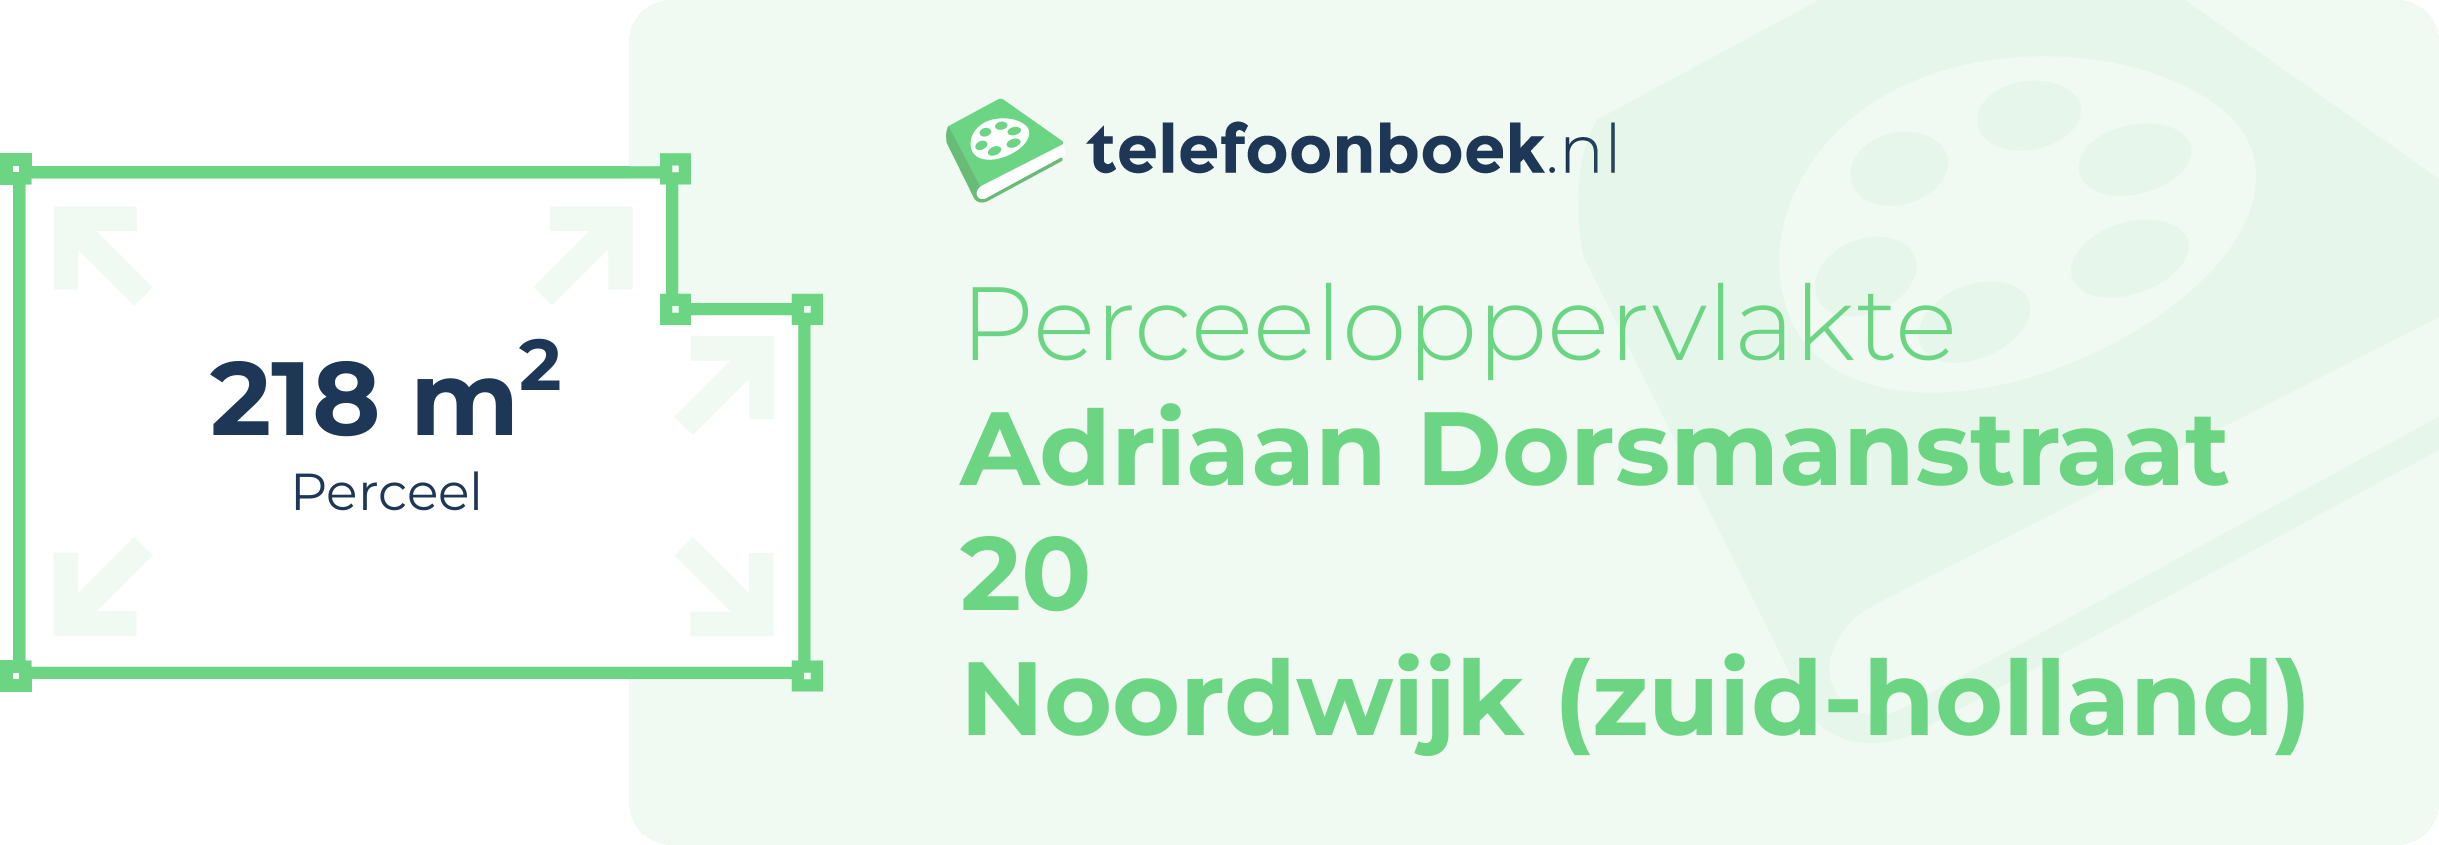 Perceeloppervlakte Adriaan Dorsmanstraat 20 Noordwijk (Zuid-Holland)